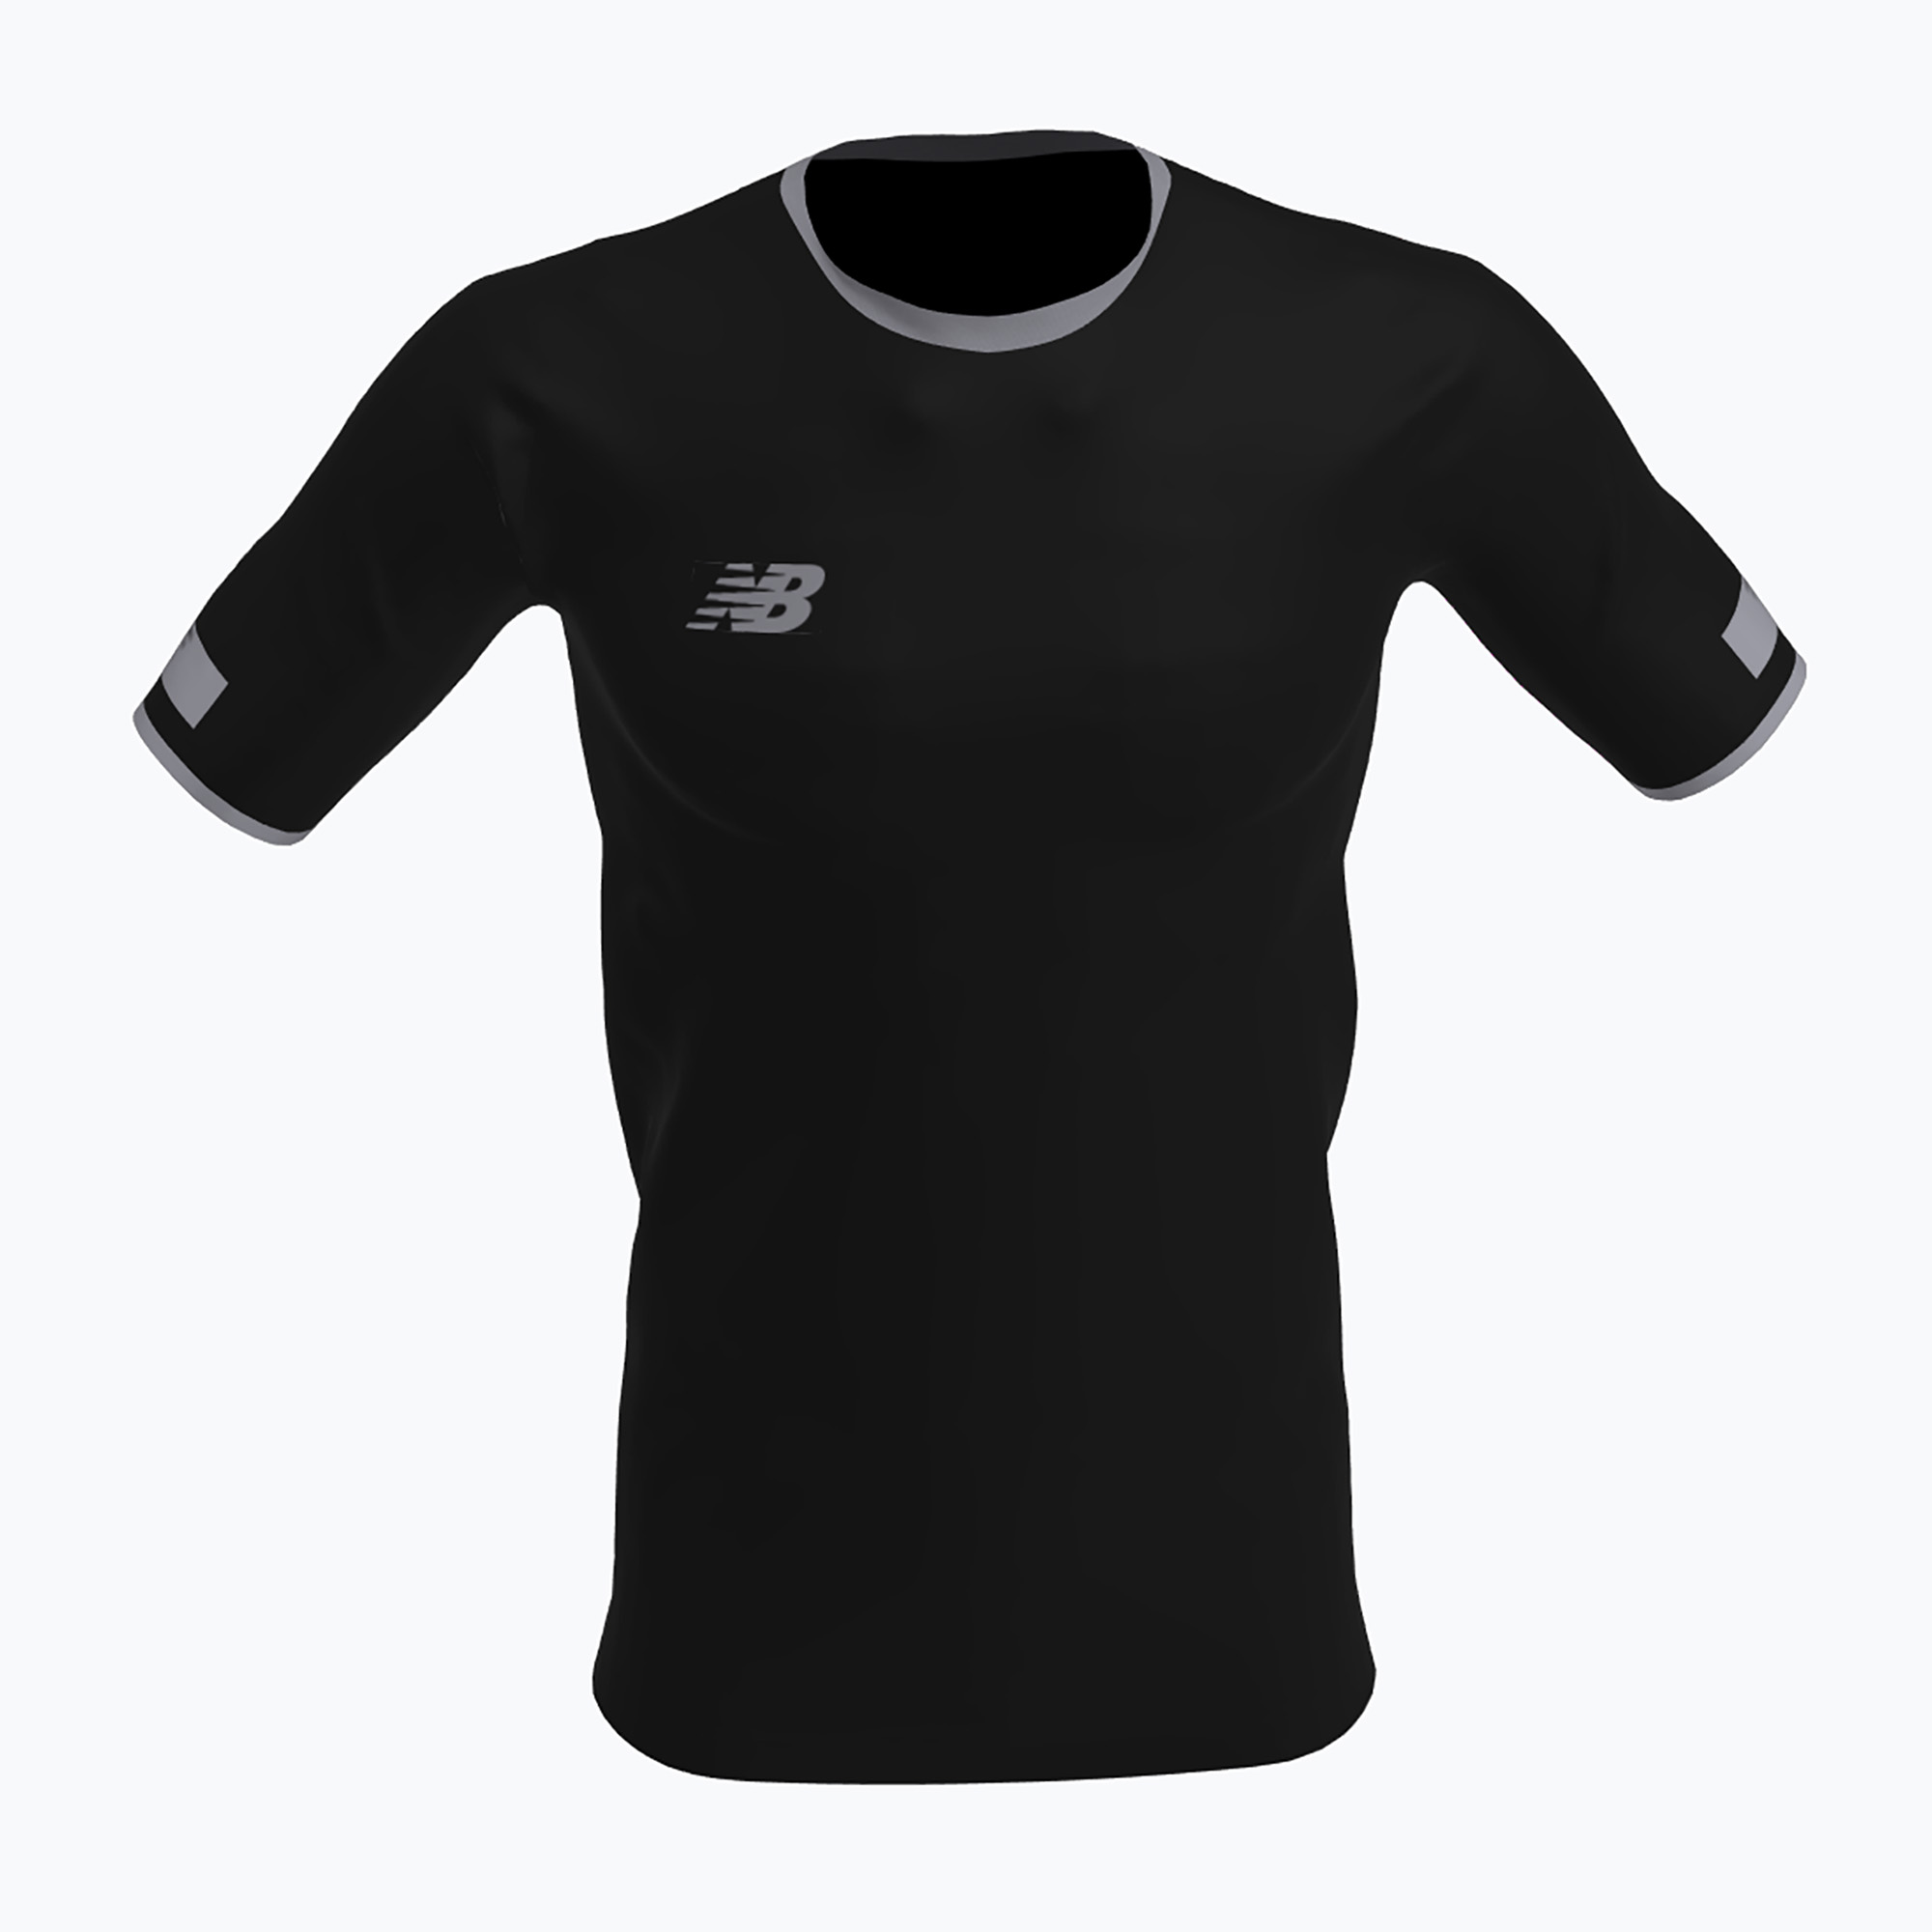 Detské futbalové tričko New Balance Turf čierne NBEJT9018